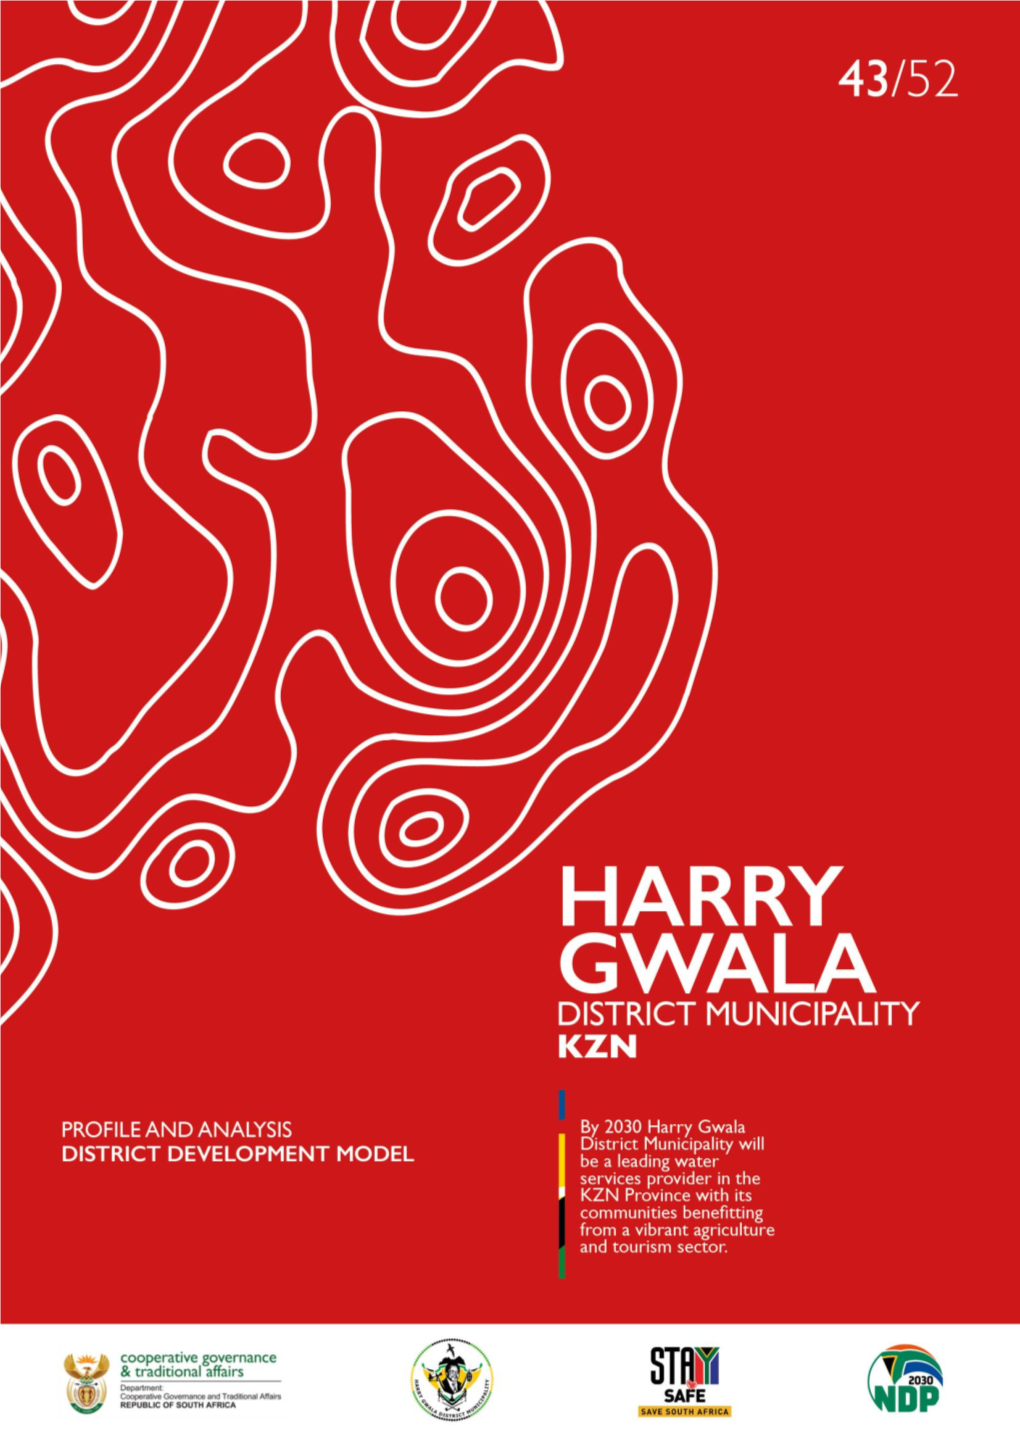 Harry Gwala District Municipality